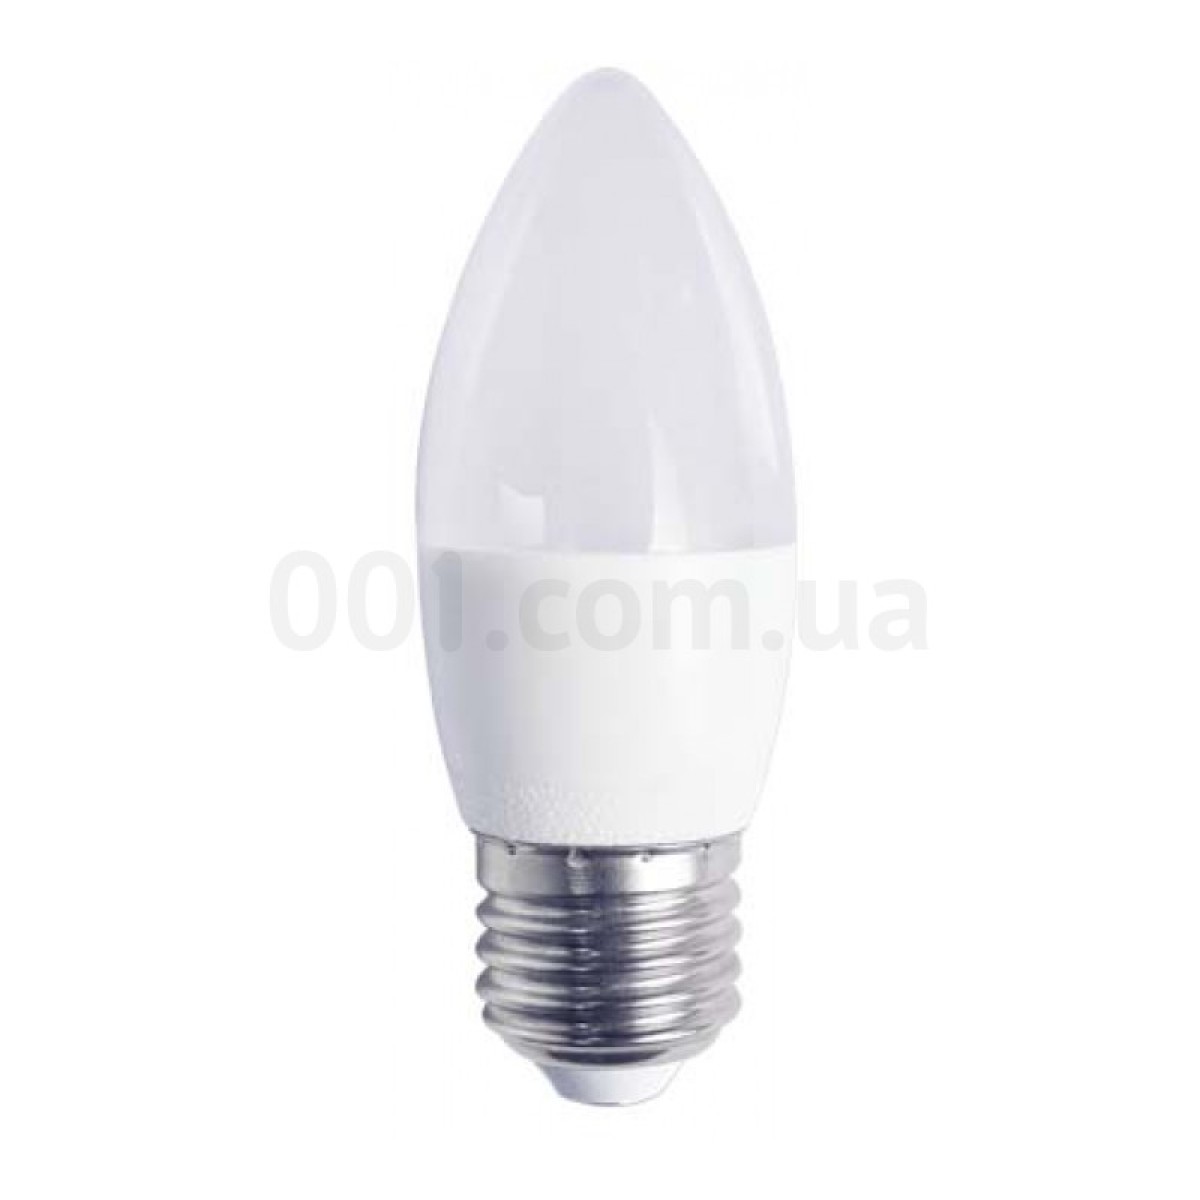 Світлодіодна лампа LB-720 C37 (свічка) 4Вт 4000K E27, Feron 256_256.jpg